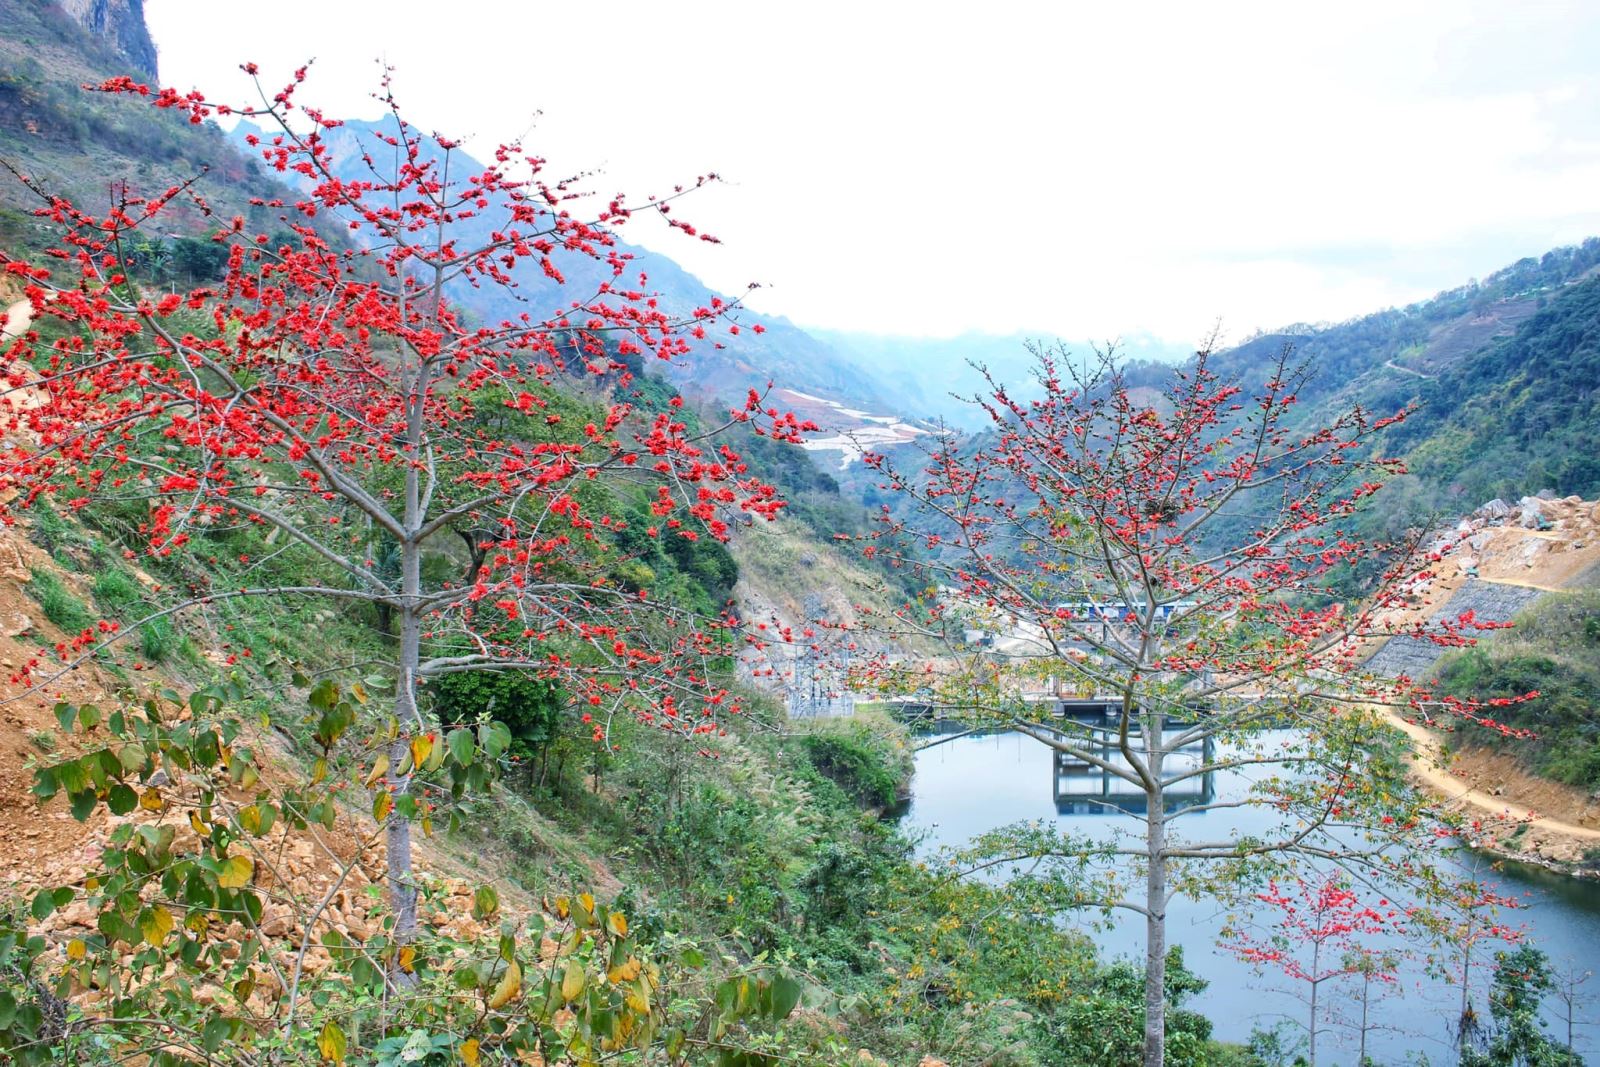 Hoa Mộc miên điểm tô sắc màu núi rừng biên cương Lào Cai